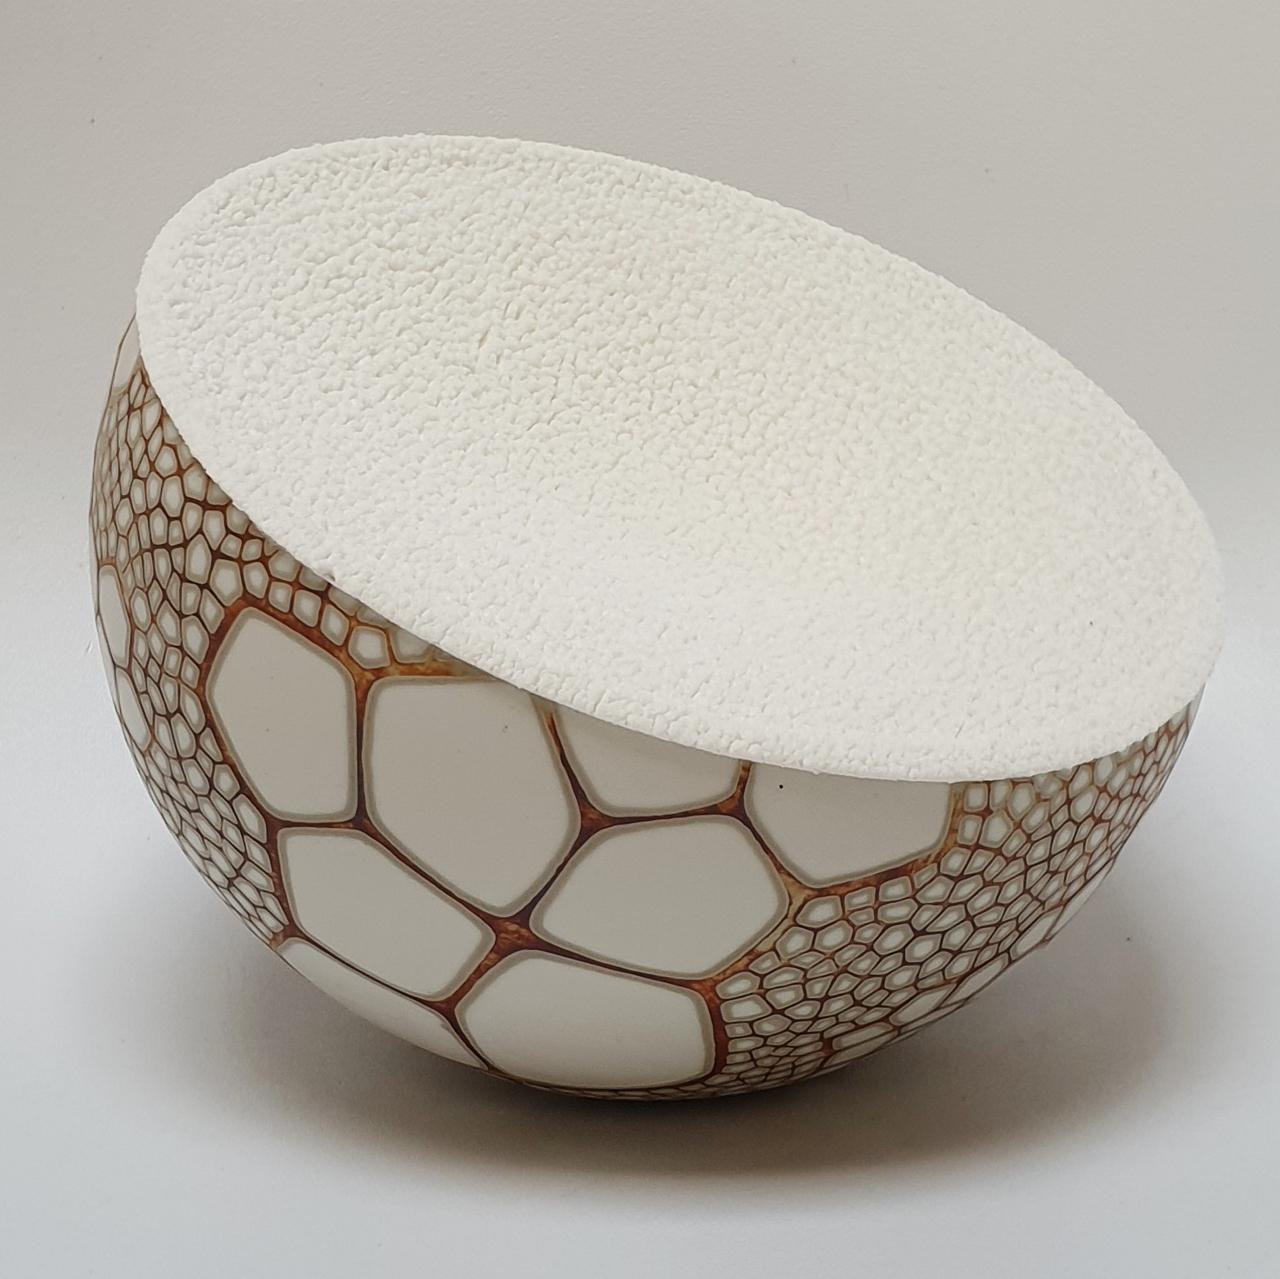 Petra Benndorf Abstract Sculpture - Objekt wackelt - contemporary modern abstract organic ceramic sculpture object